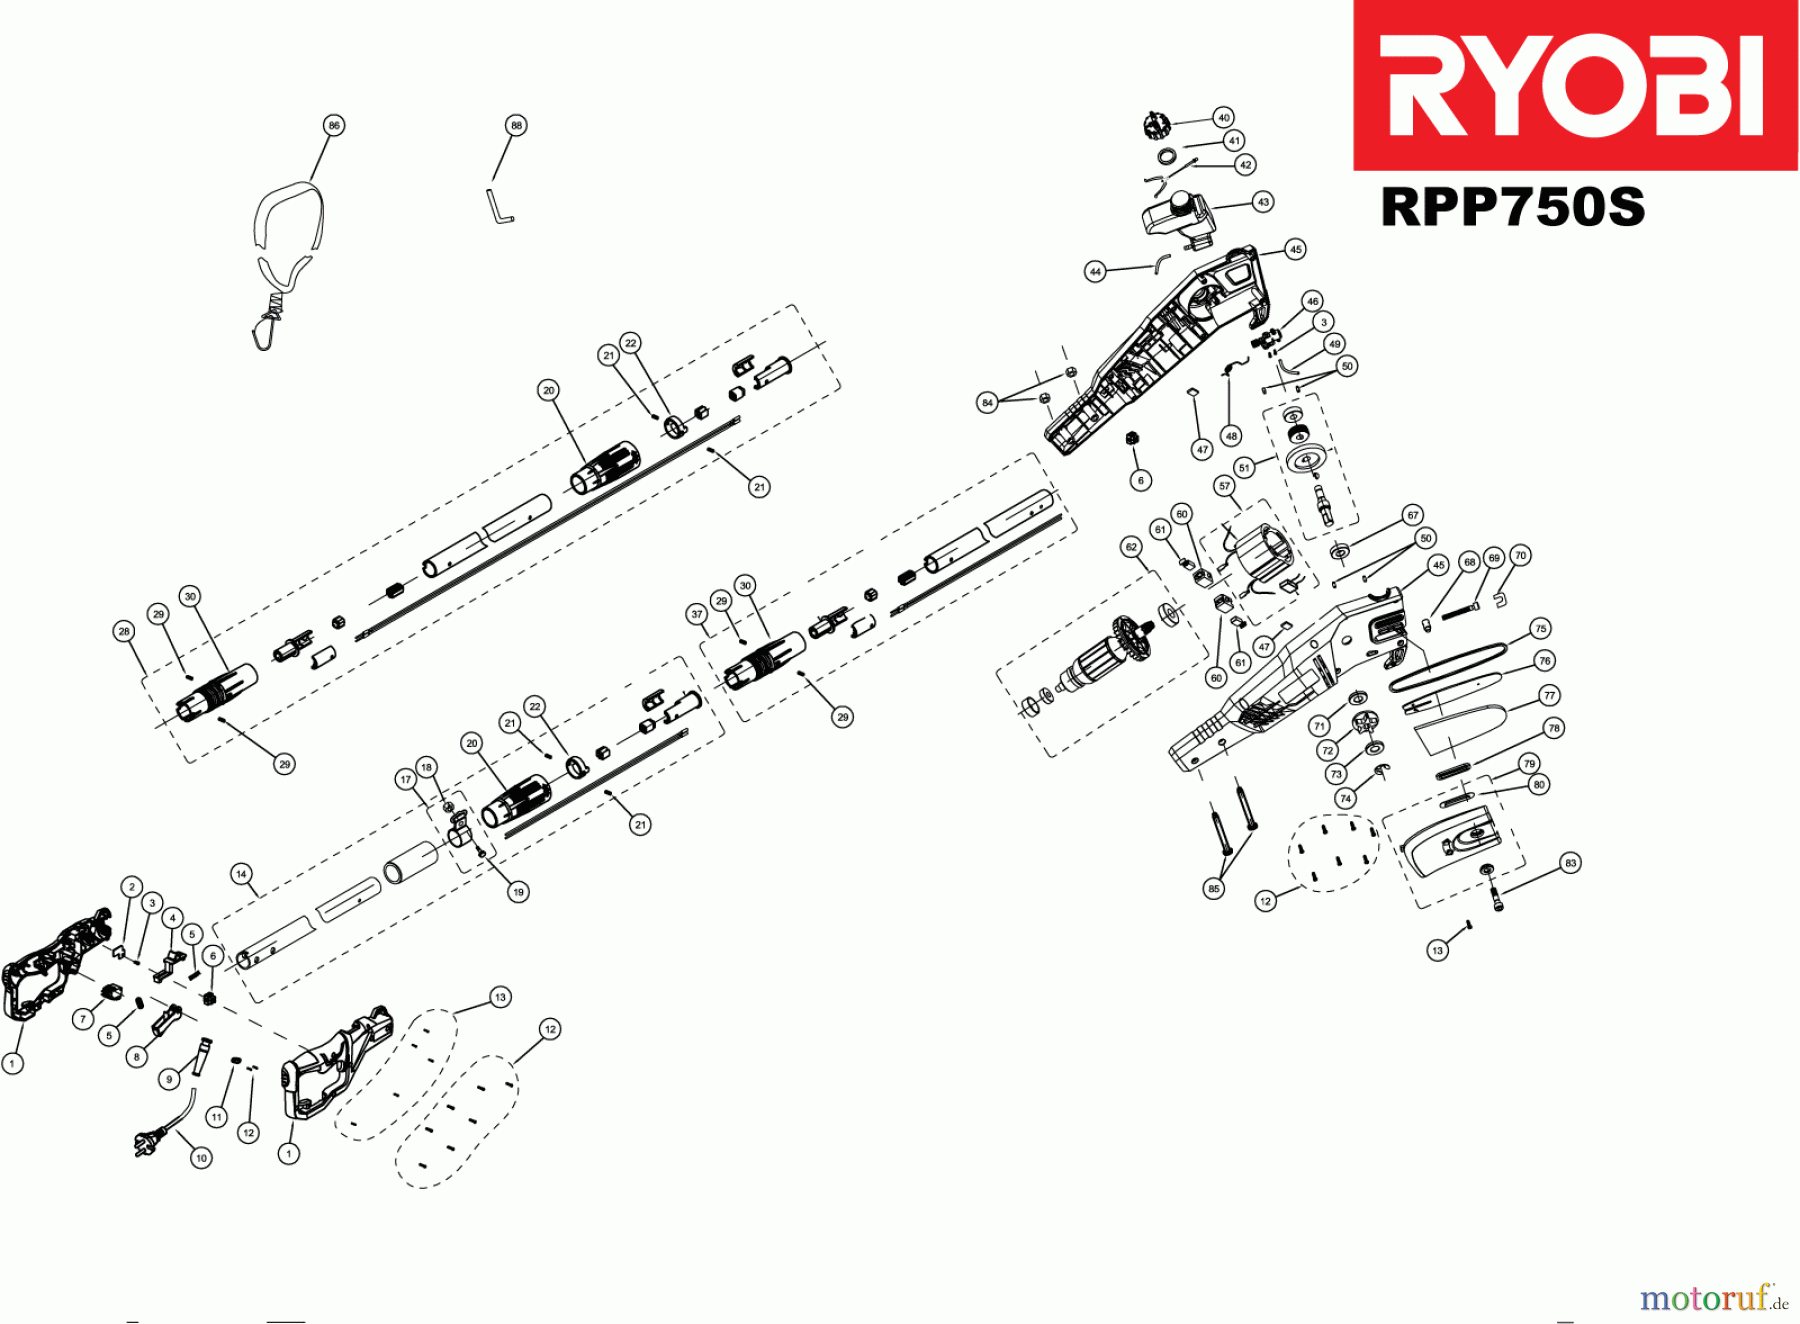  Ryobi Hochentaster RPP750S 750 W Elektro-Hoch-Entaster